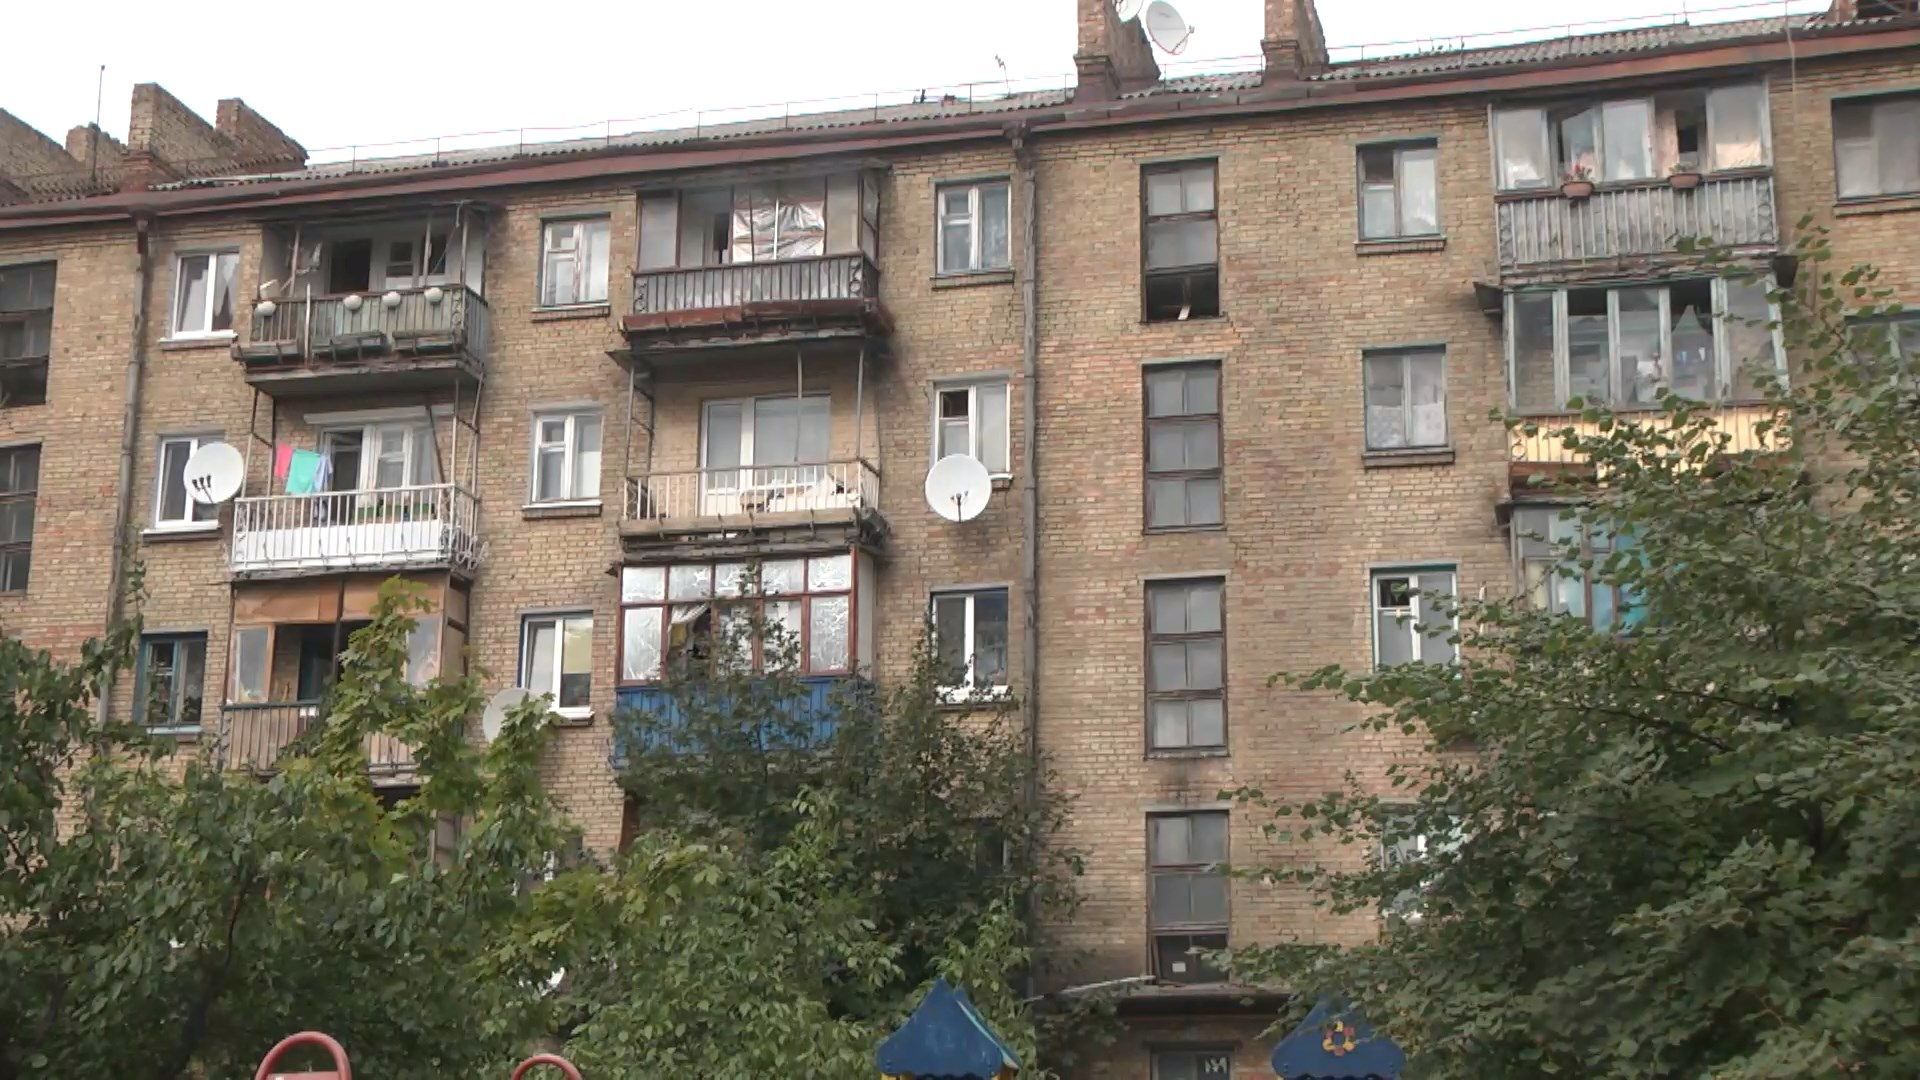 Обвал будинку в Дрогобичі: чи може повторитися така ситуація в інших містах України